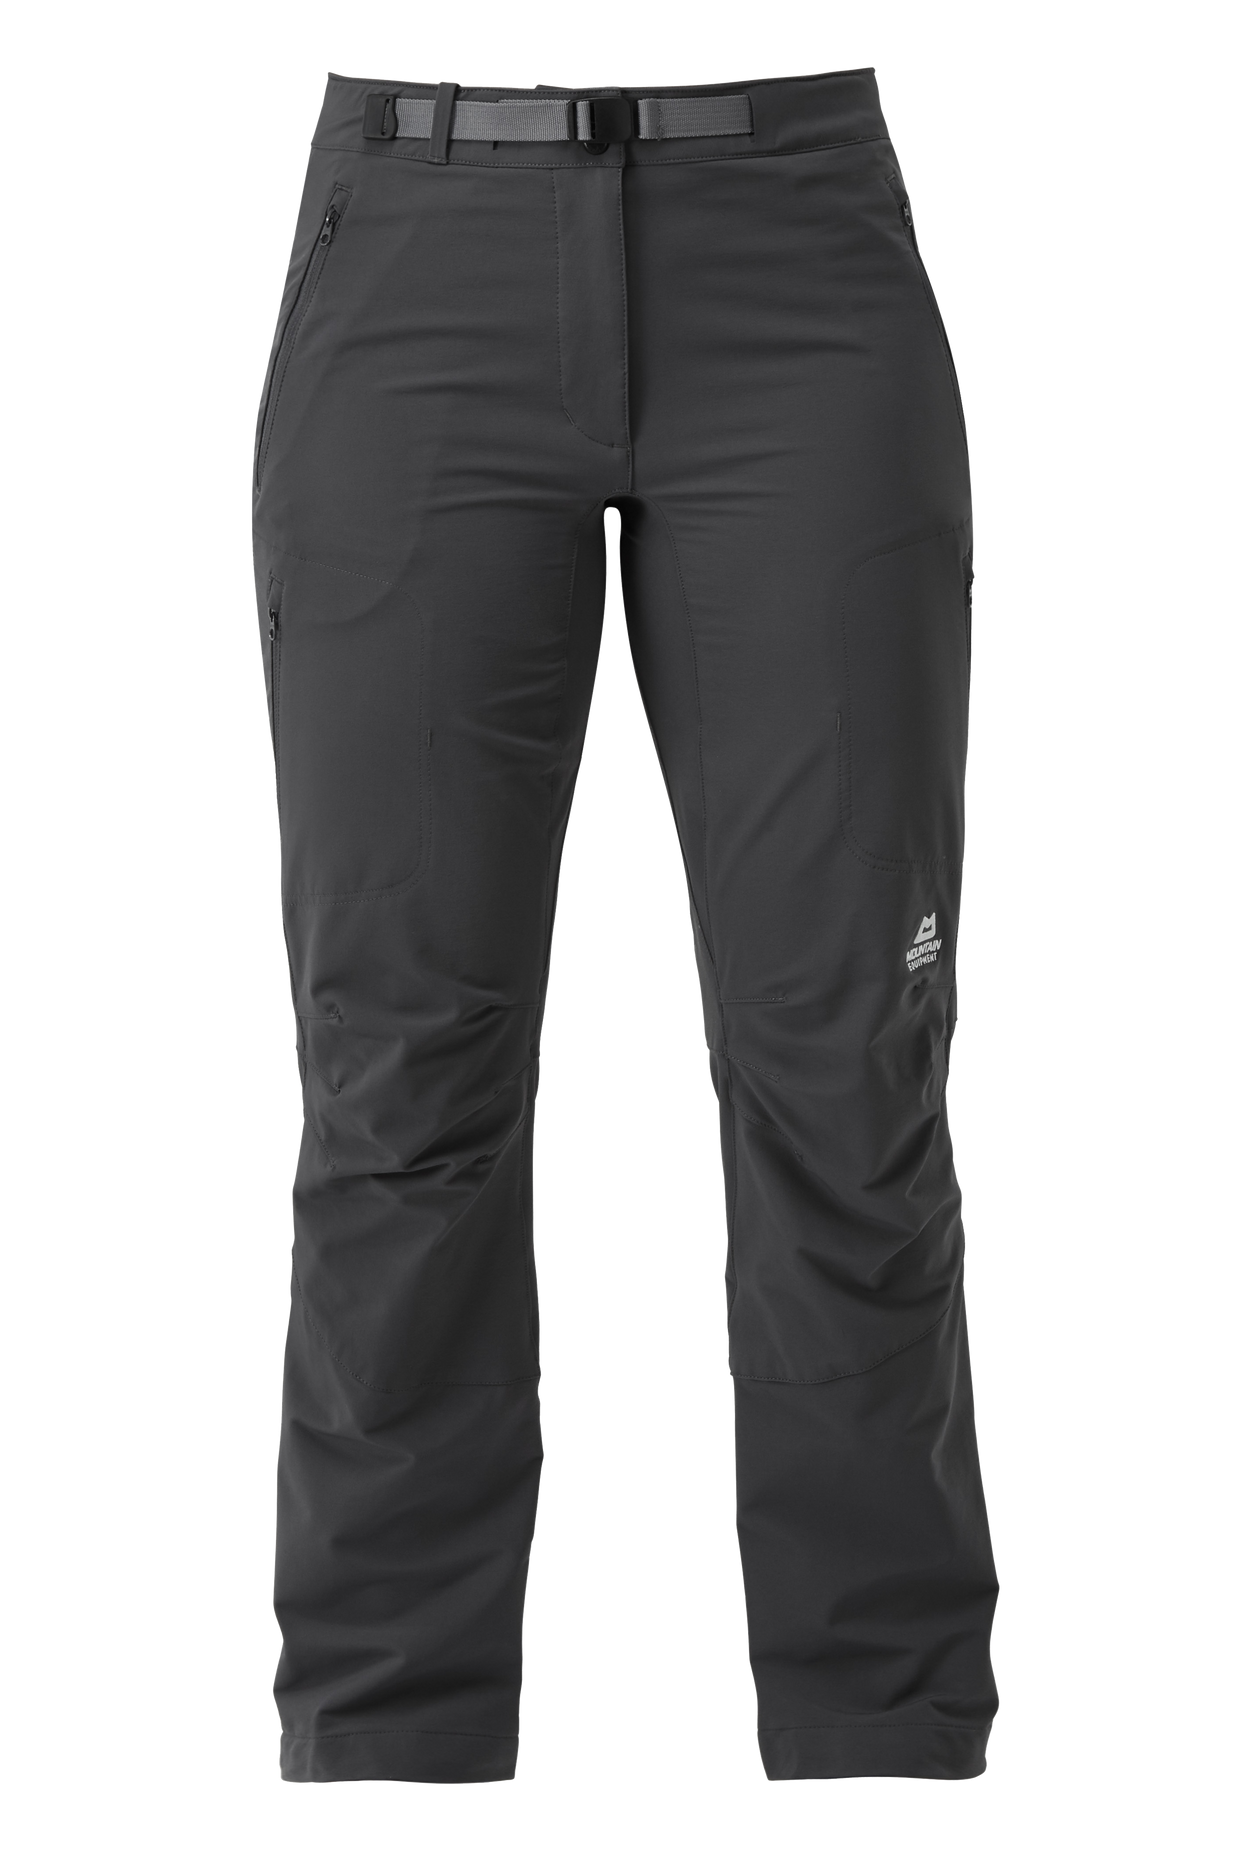 Mountain Equipment dámské softshellové kalhoty Chamois Wmns Pant - prodloužené Barva: Anvil Grey, Velikost: 10/S